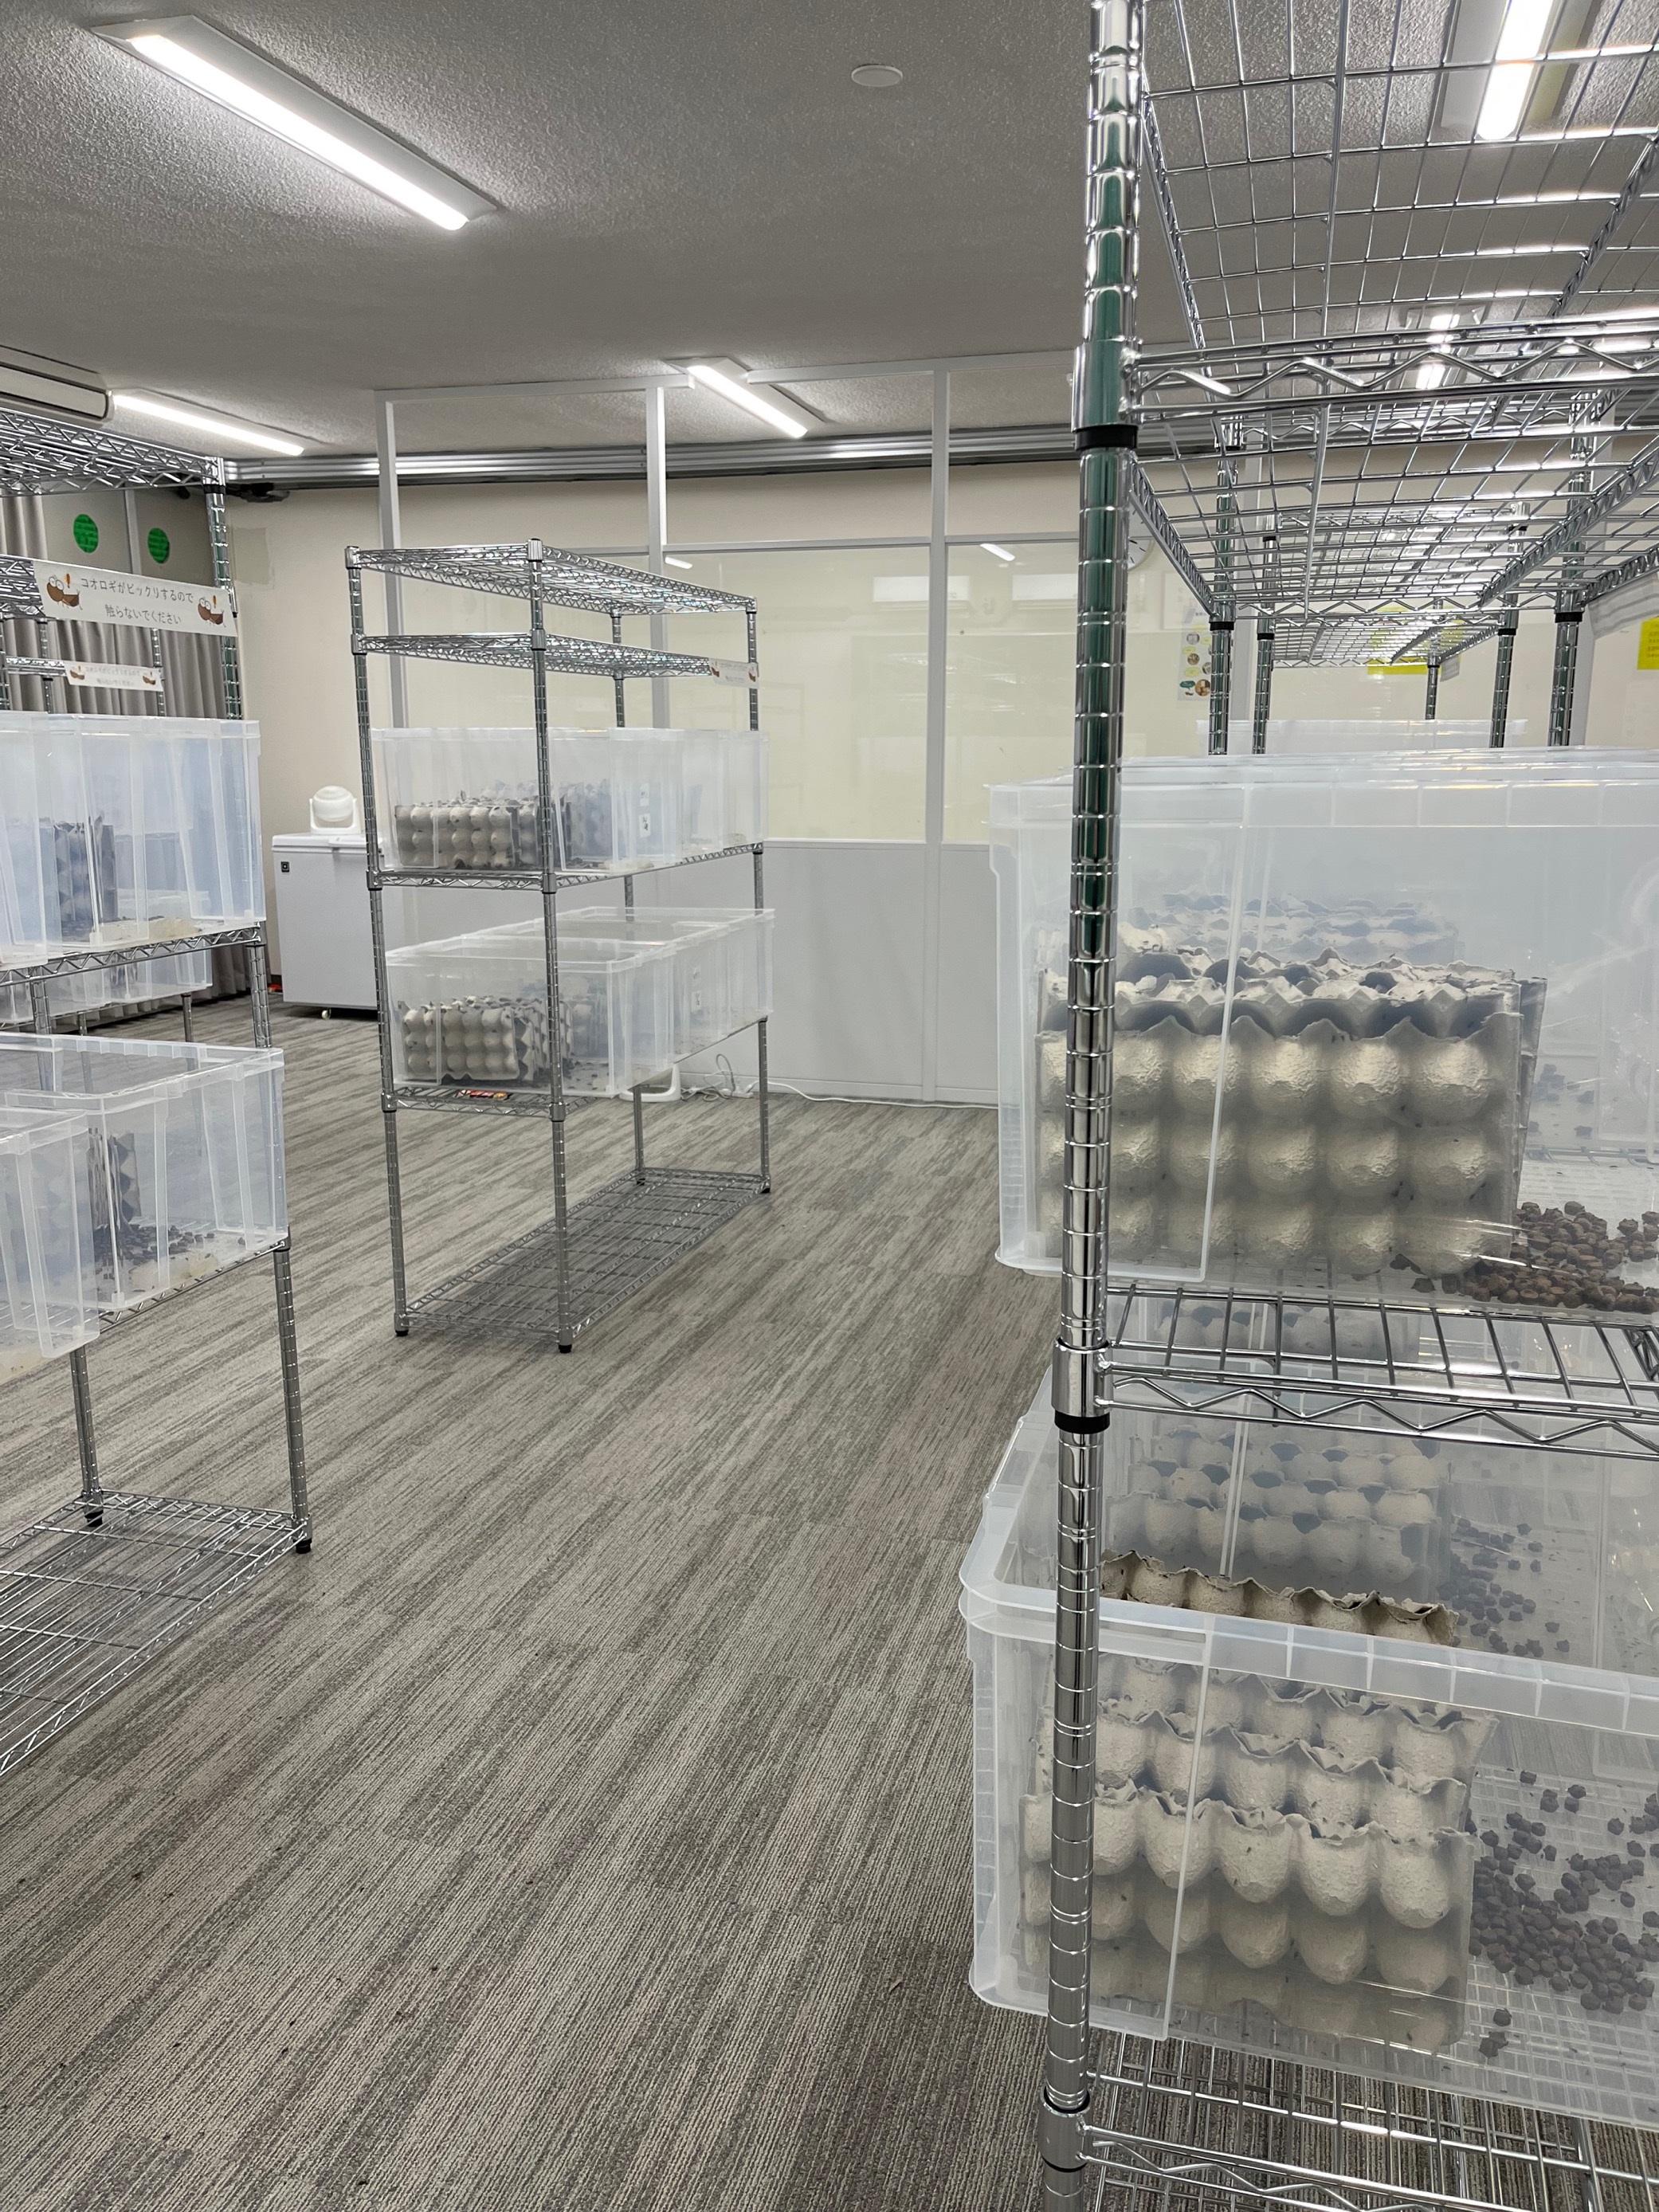 NTT東日本の食用コオロギ飼育実証のための施設